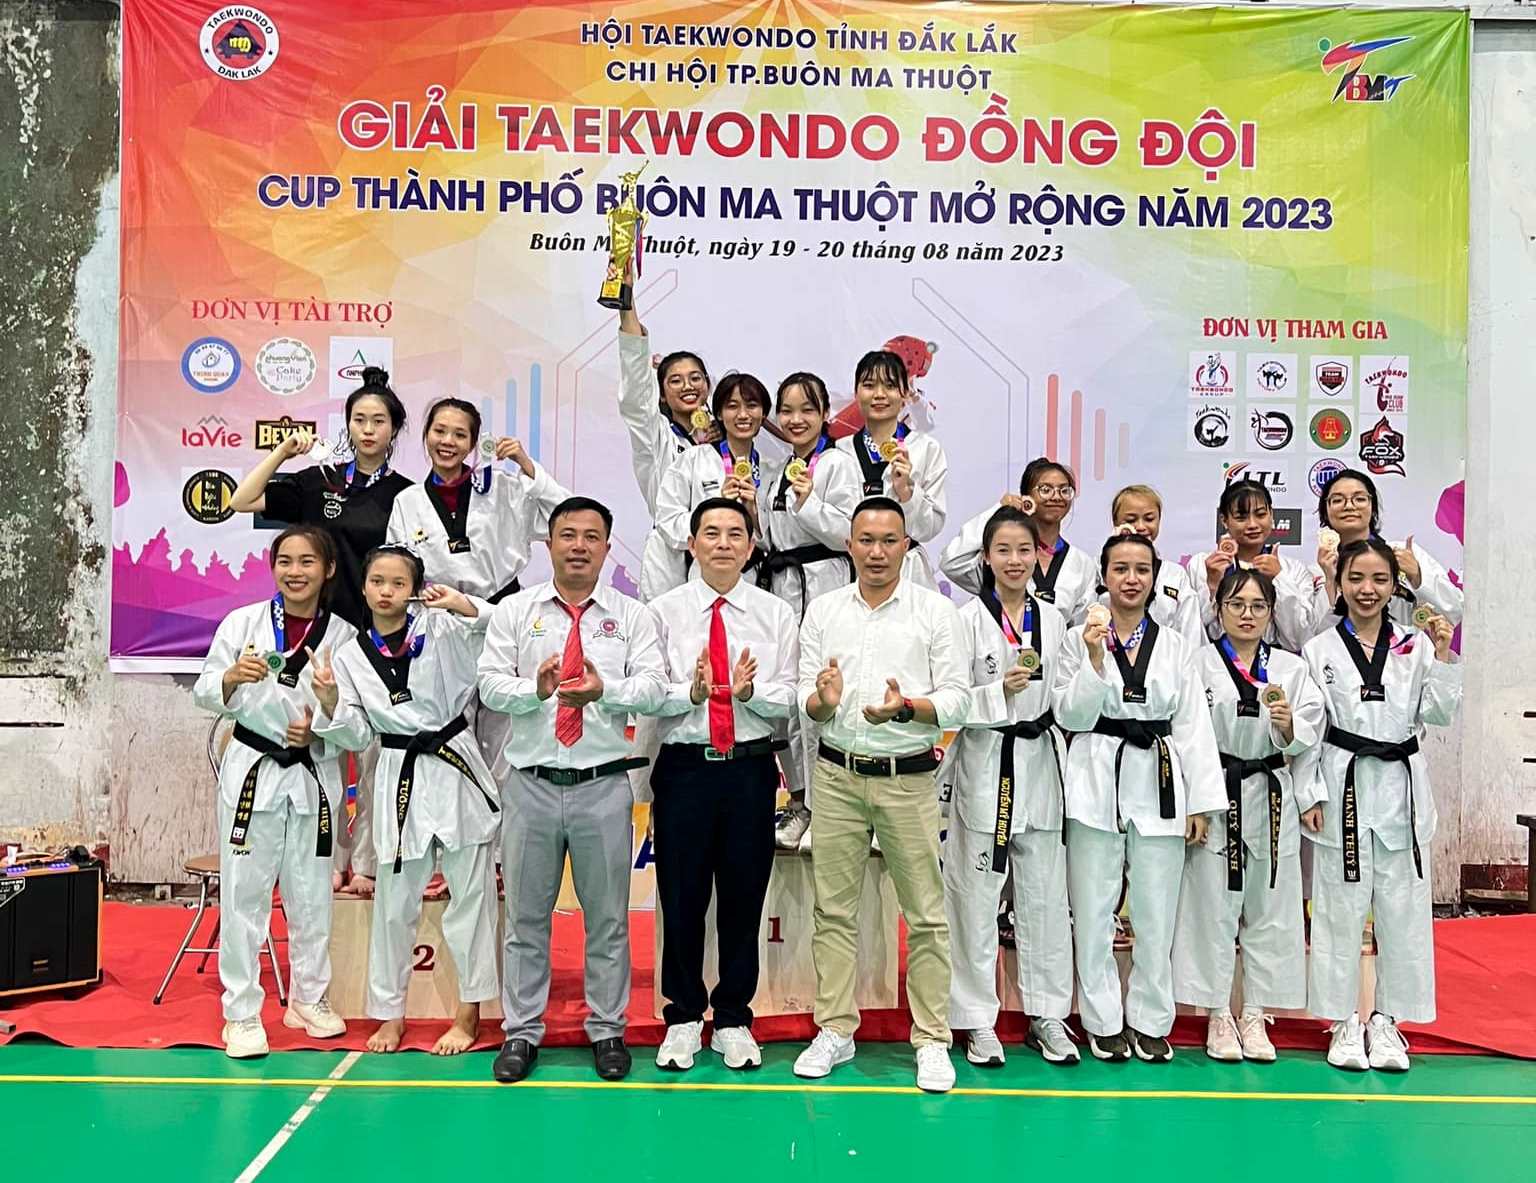 192 võ sĩ tranh tài tại Giải Taekwondo đồng đội, Cúp TP. Buôn Ma Thuột mở rộng năm 2023